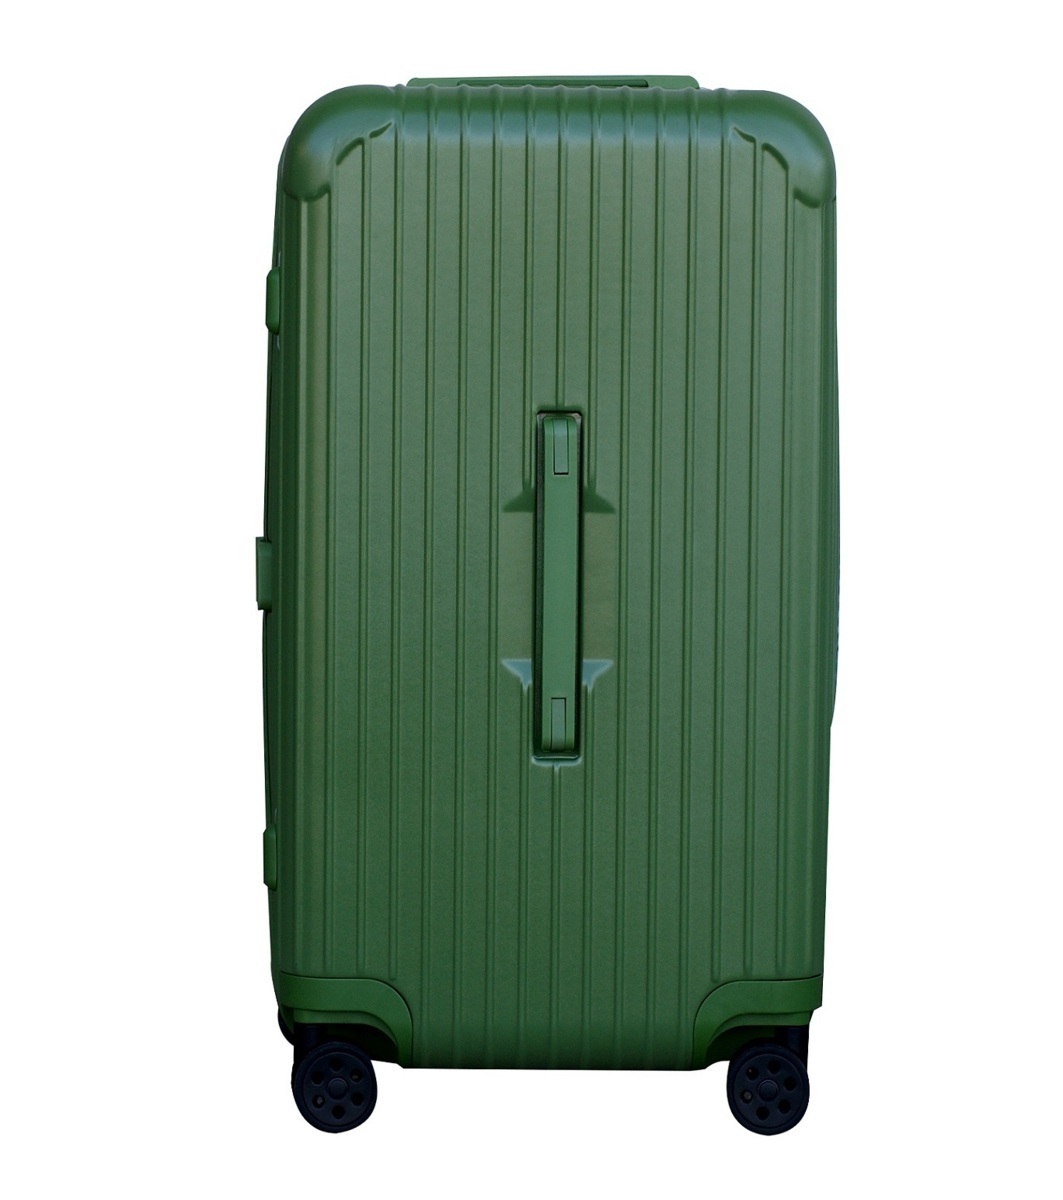 世界有名な スーツケース 8輪 超軽量大容量 旅行 キャリーケース ファスナー式 XＬ グリーン ニューデザイン TSAロック搭載 - スーツケース 、トランク一般